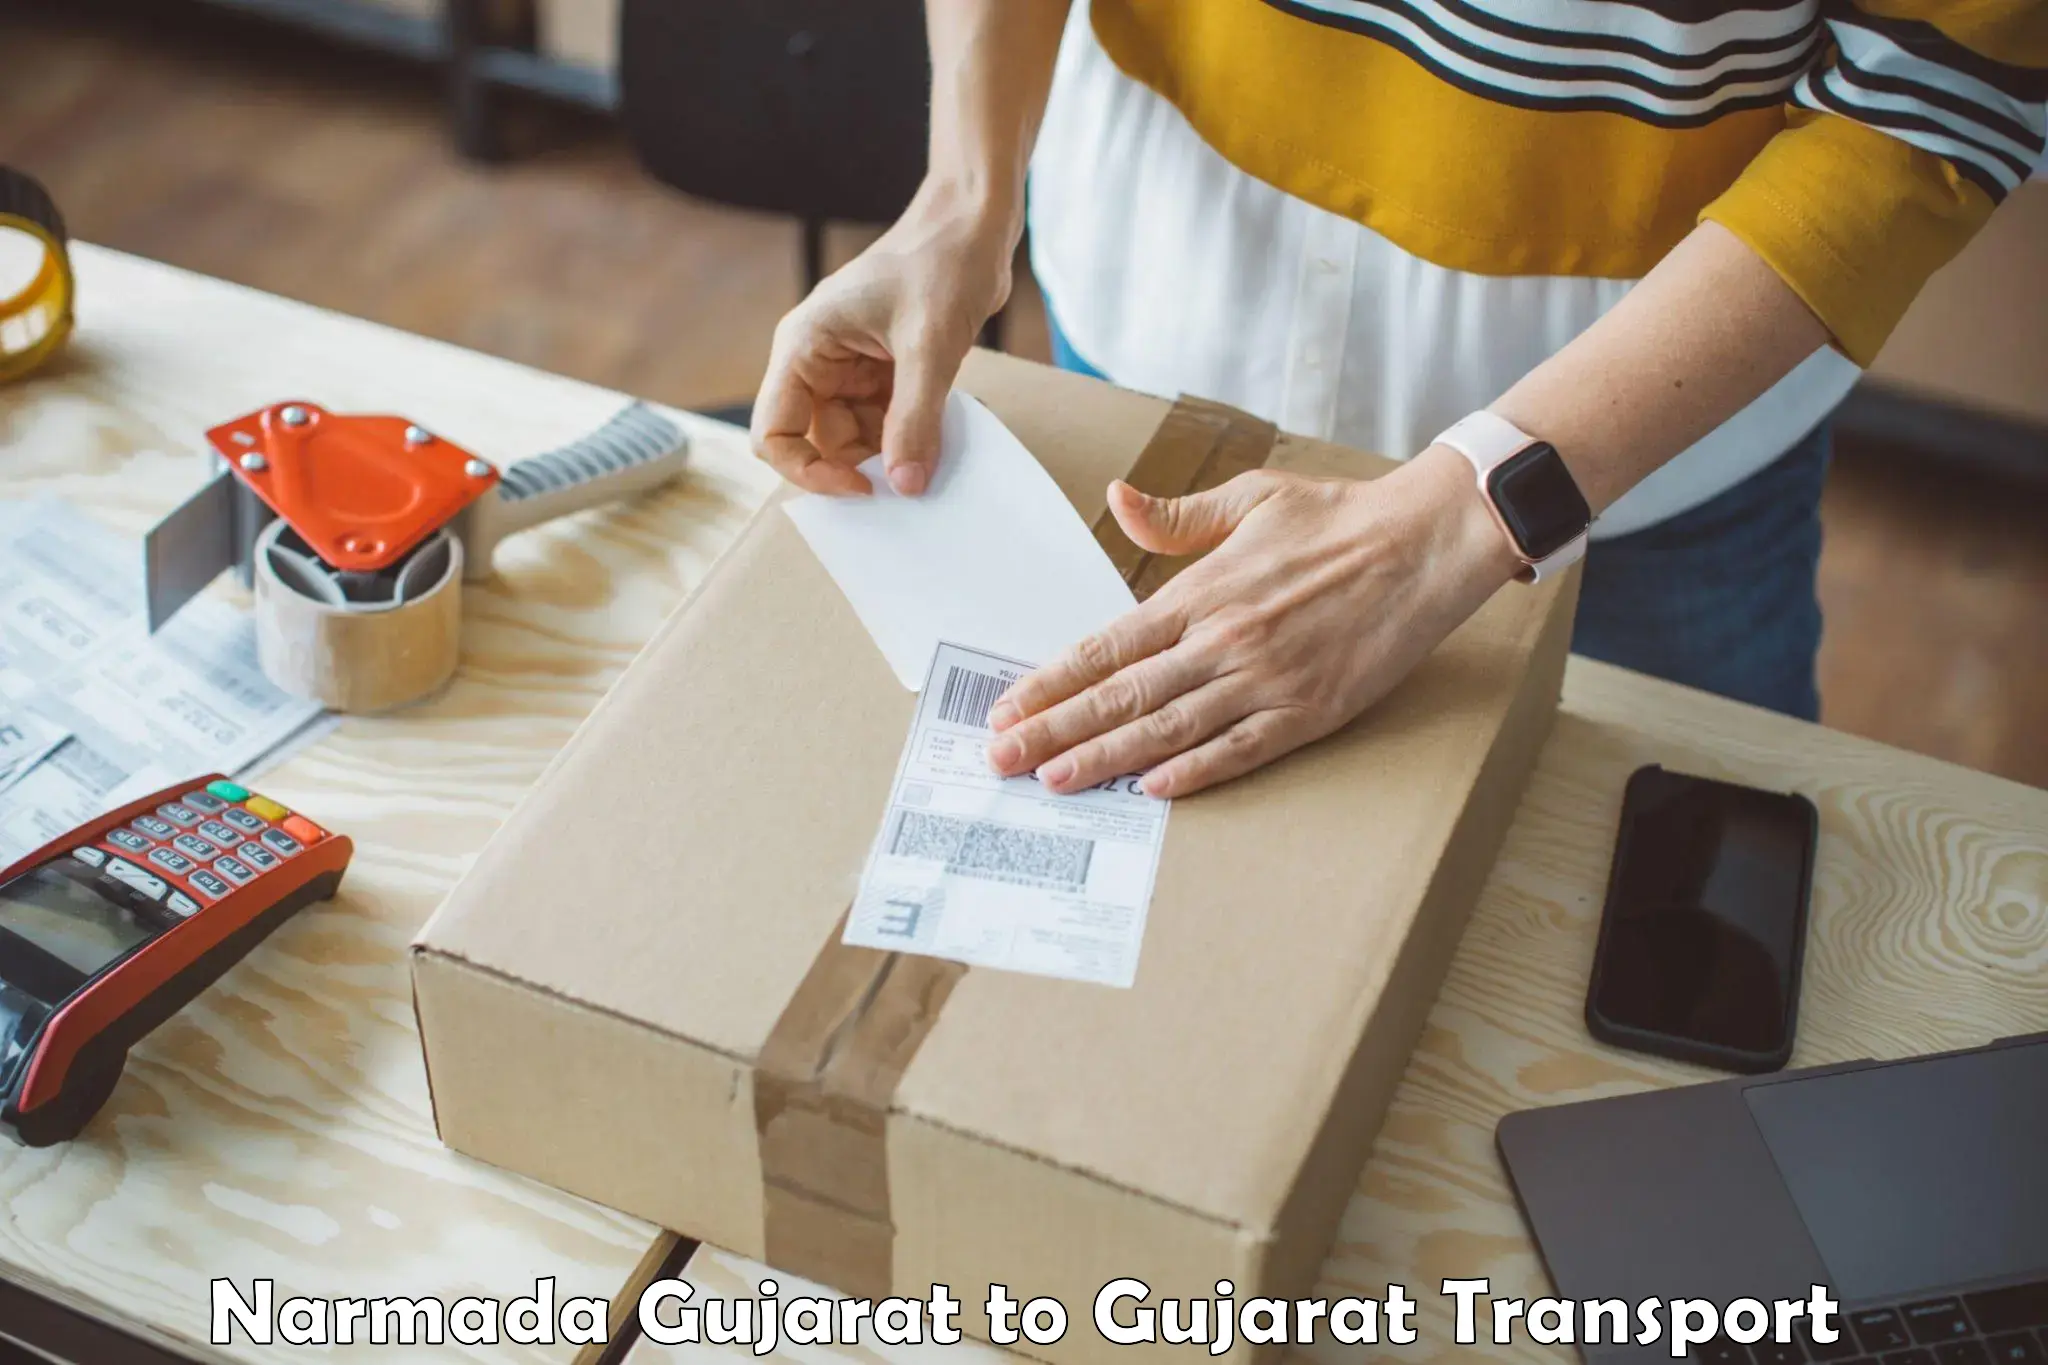 Shipping partner Narmada Gujarat to Gujarat